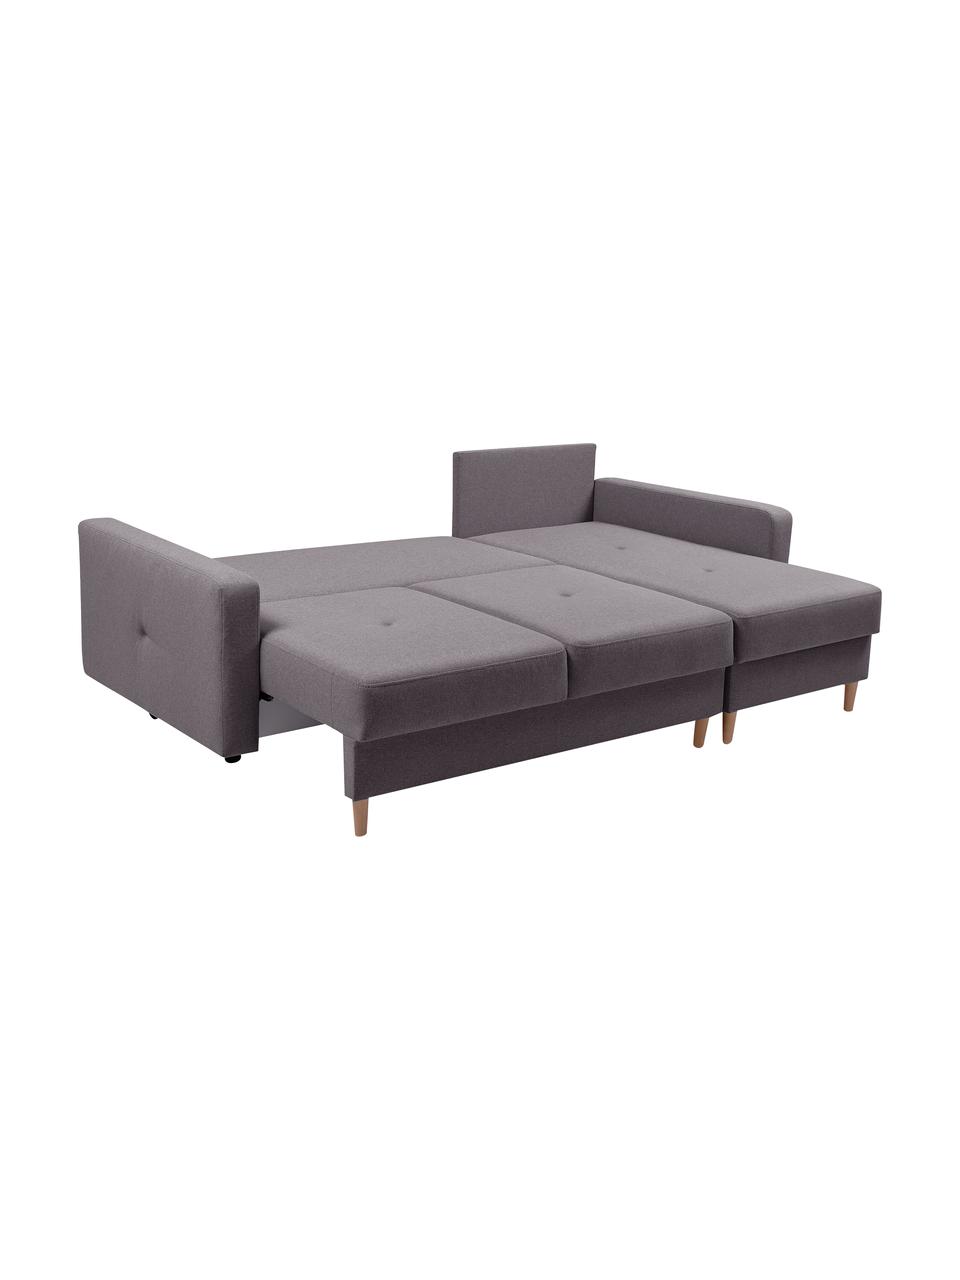 Sofa narożna z funkcją spania i miejscem do przechowywani Vinci (4-osobowa), Tapicerka: 100% poliester, Brązowy, S 231 x G 146 cm